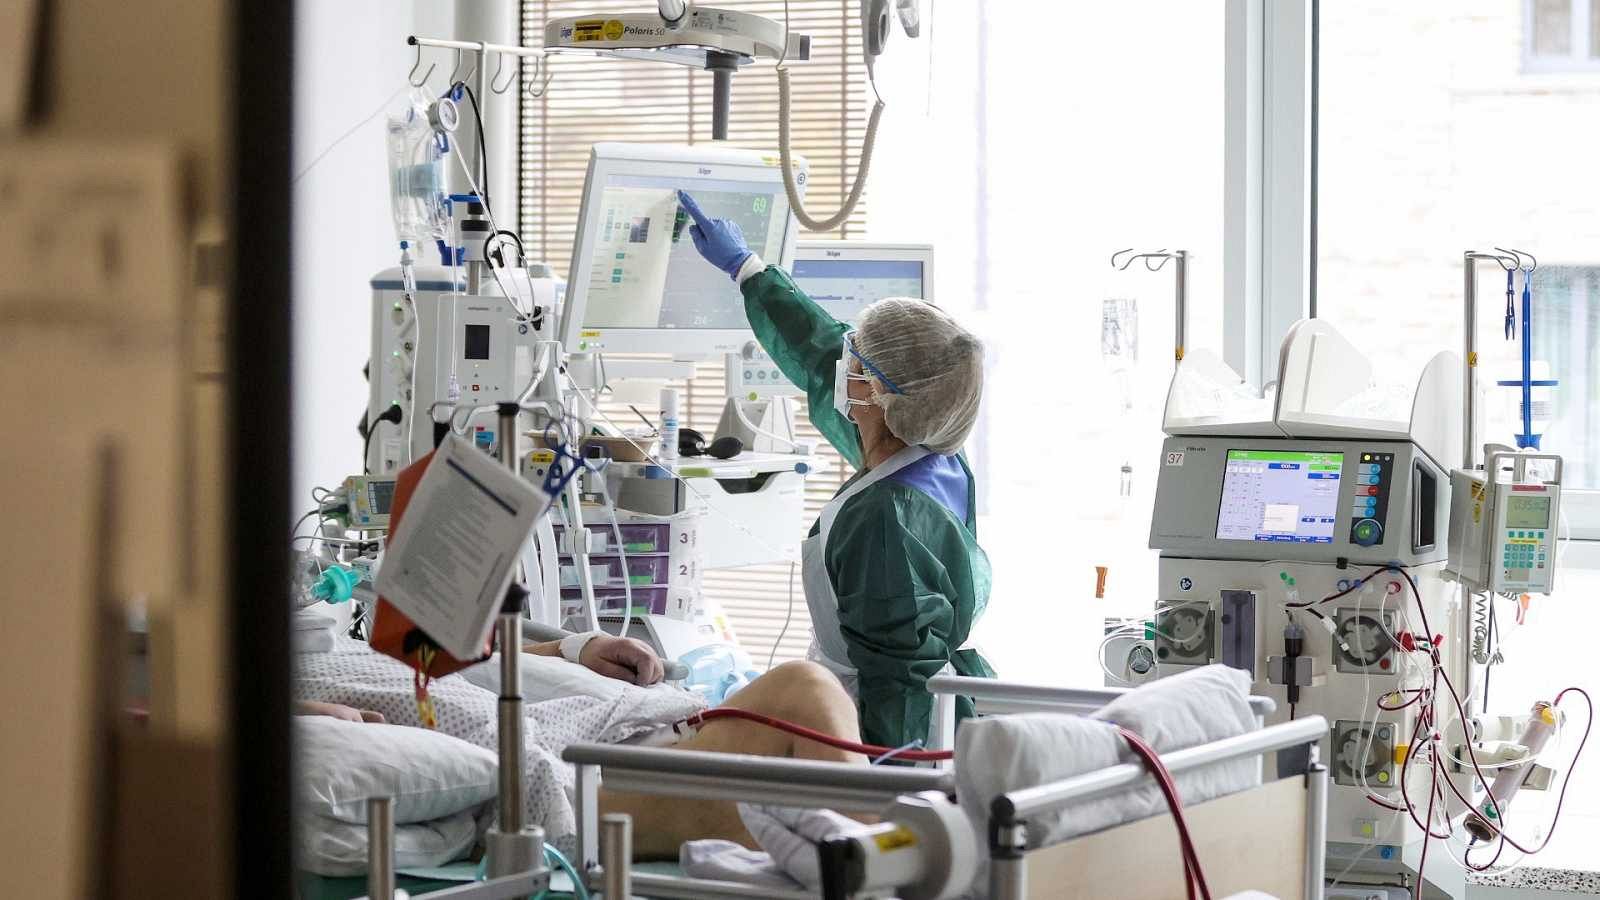 Els hospitals tanquen prop de deu mil llits durant l'estiu tot i la pandèmia